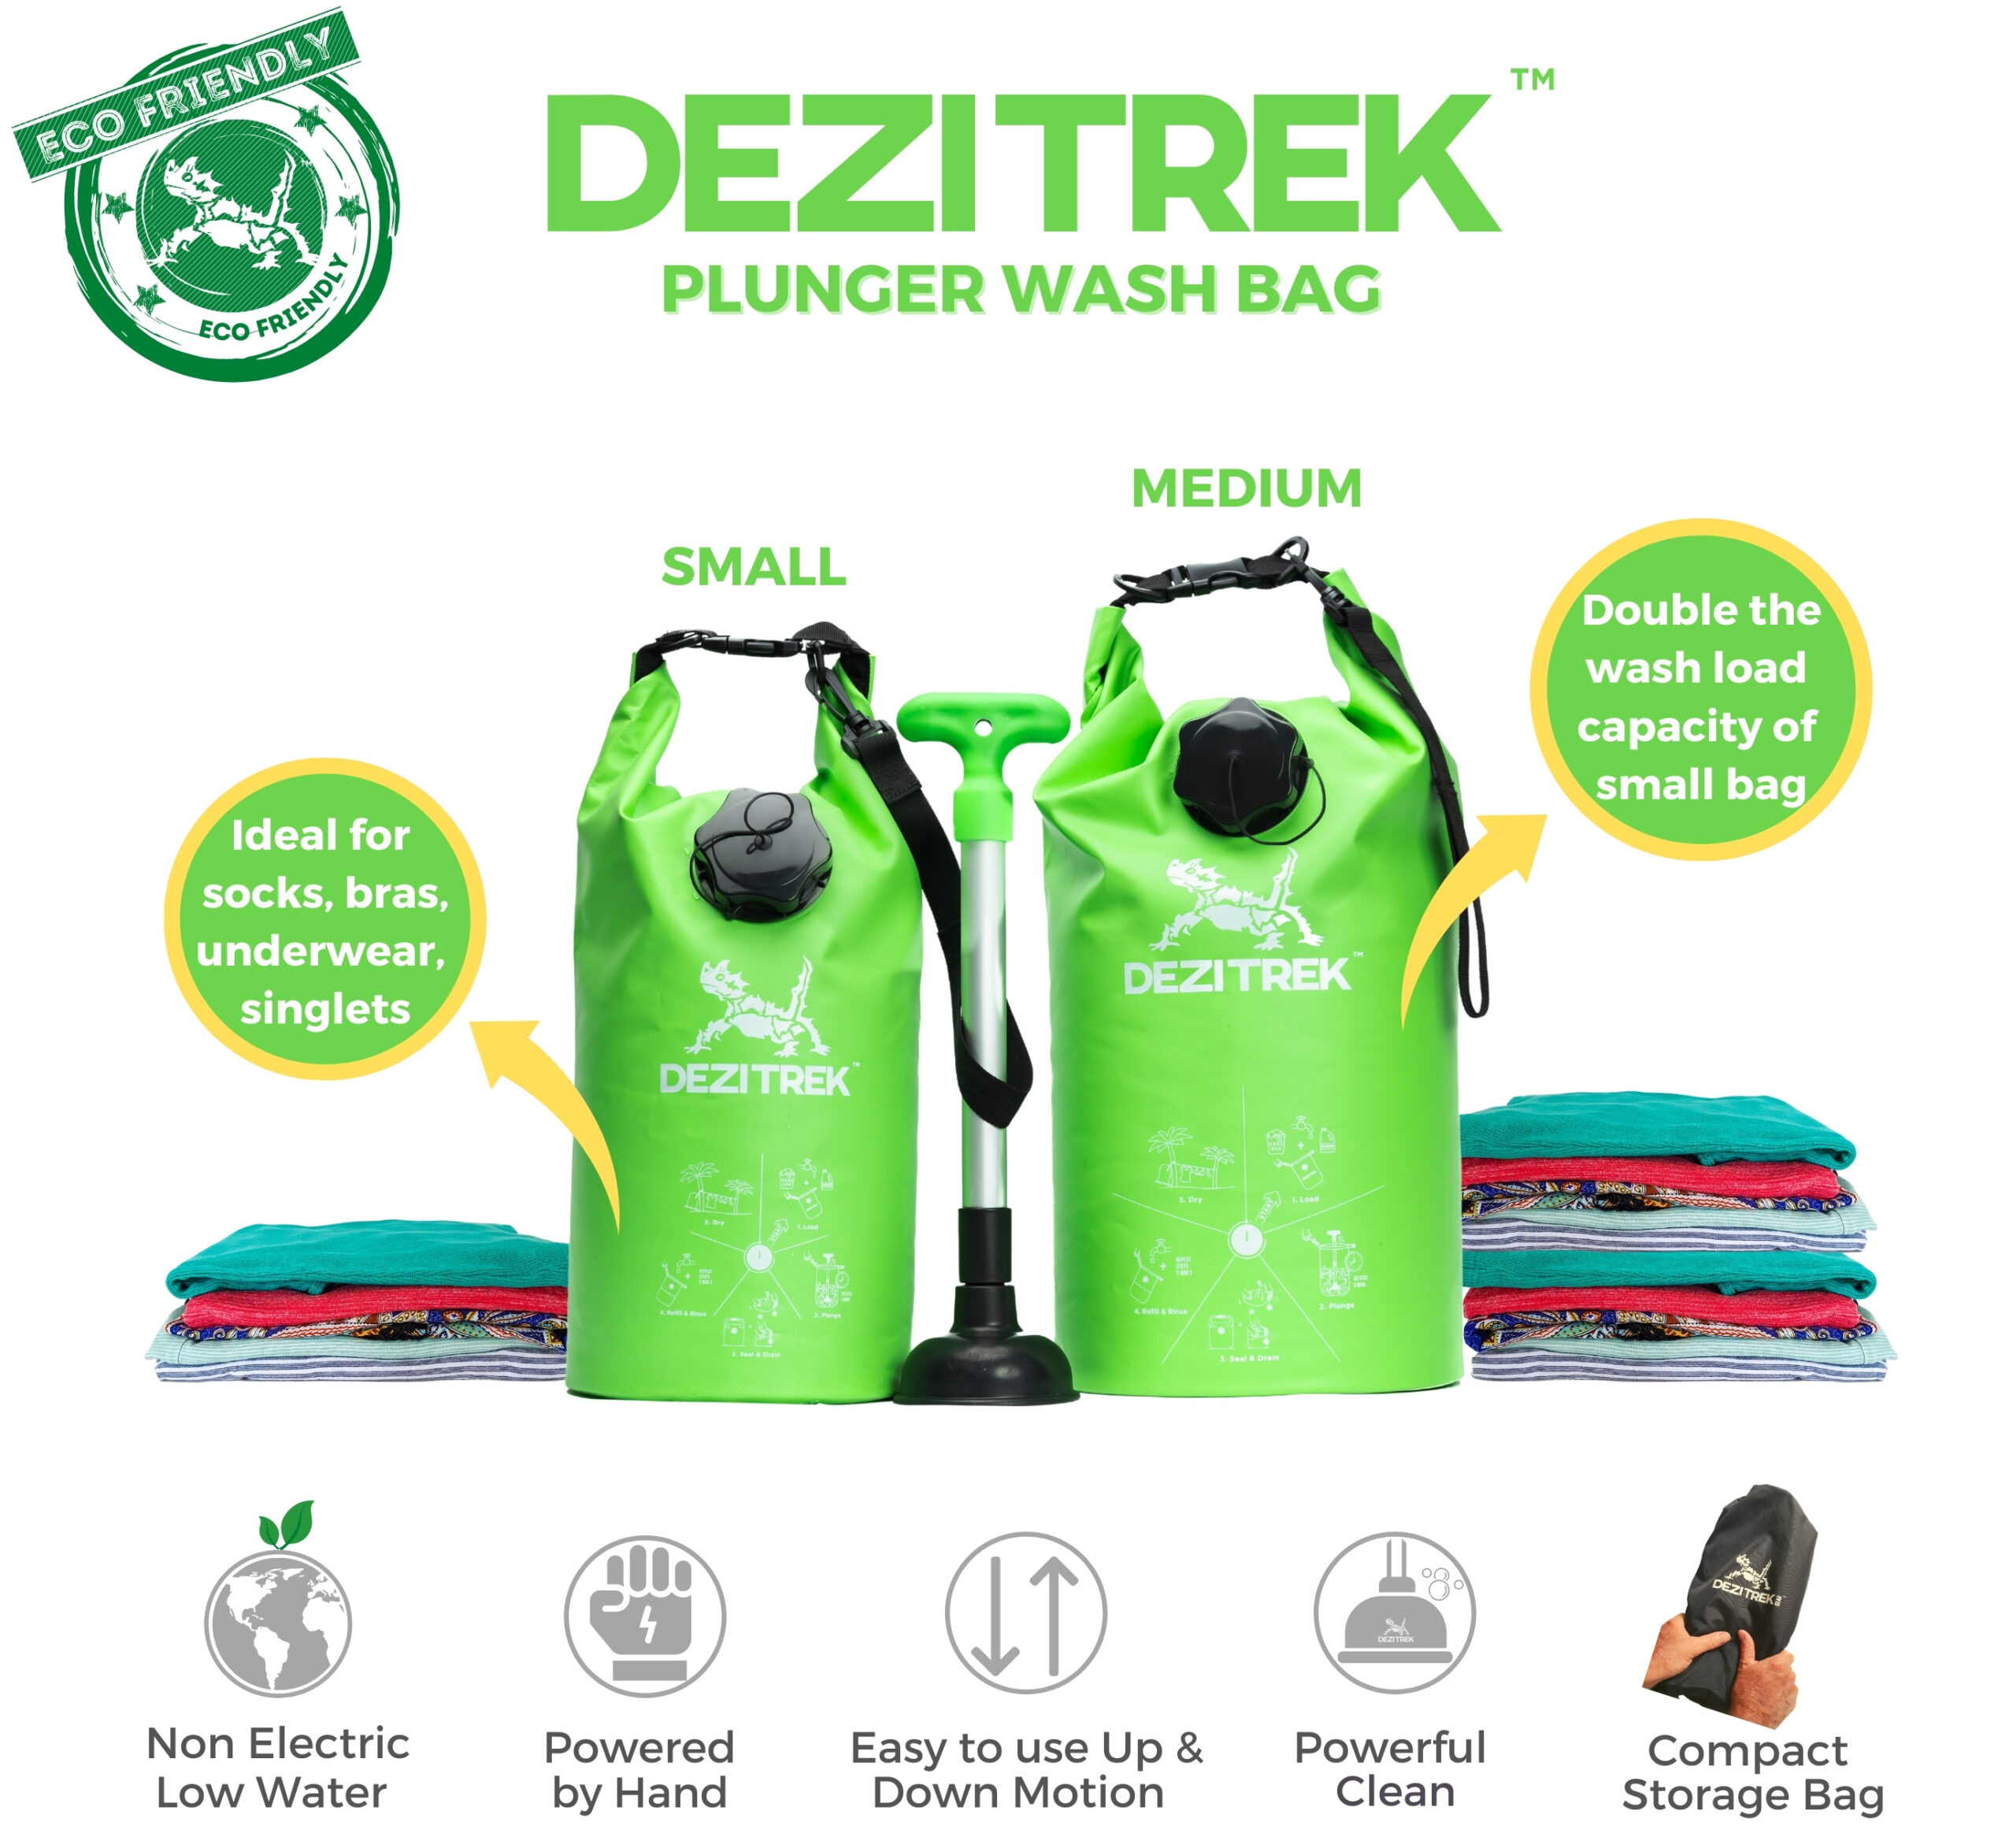 Medium Plunger Wash Bag - Dezitrek